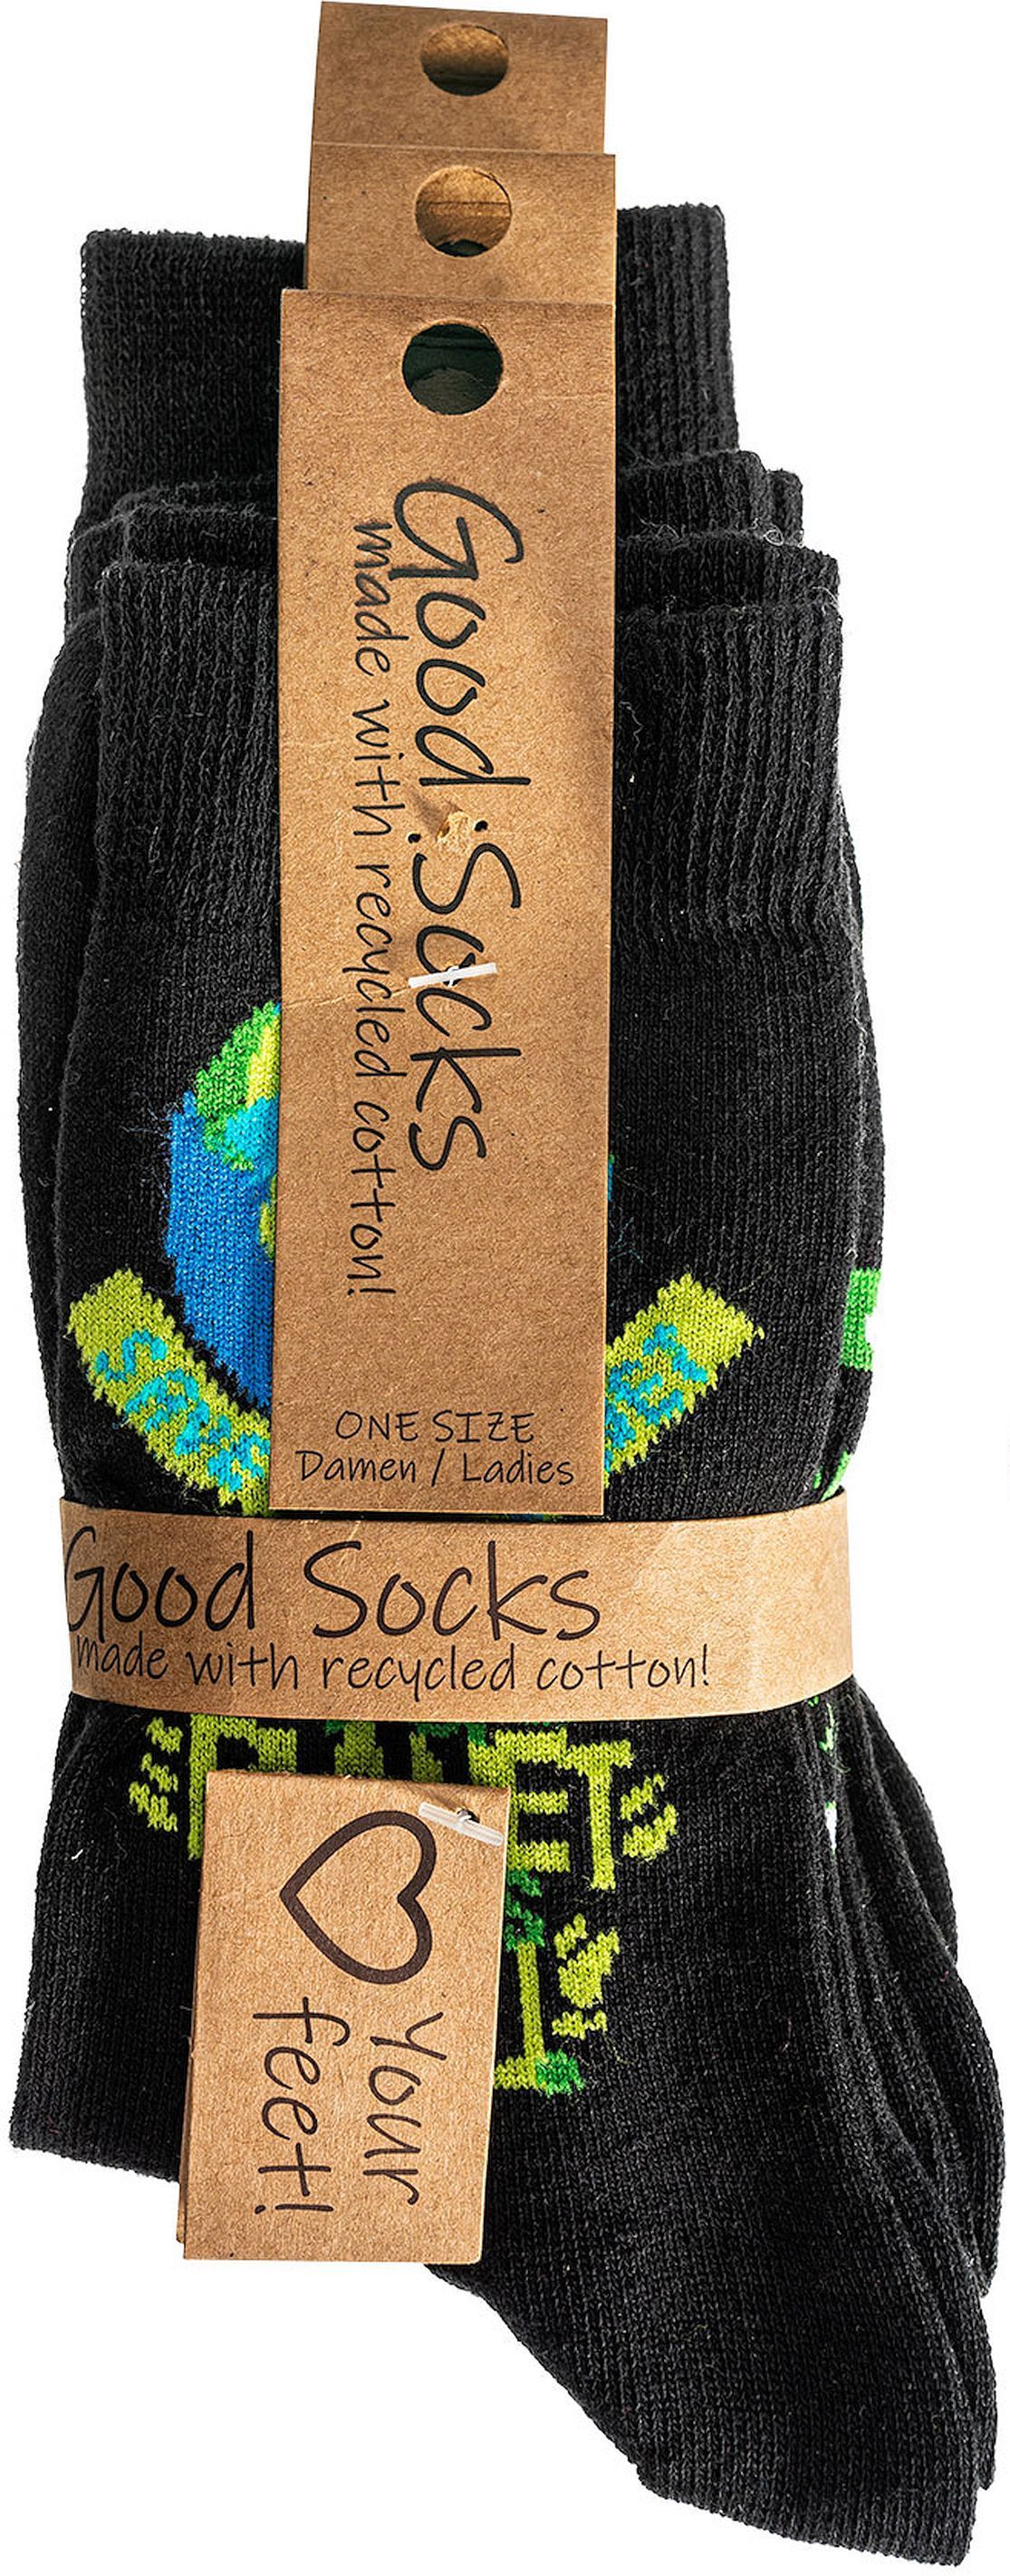  Recycling-Socken  „Save the planet“   50% recycelte Baumwolle für Damen und Herren 3 Paar